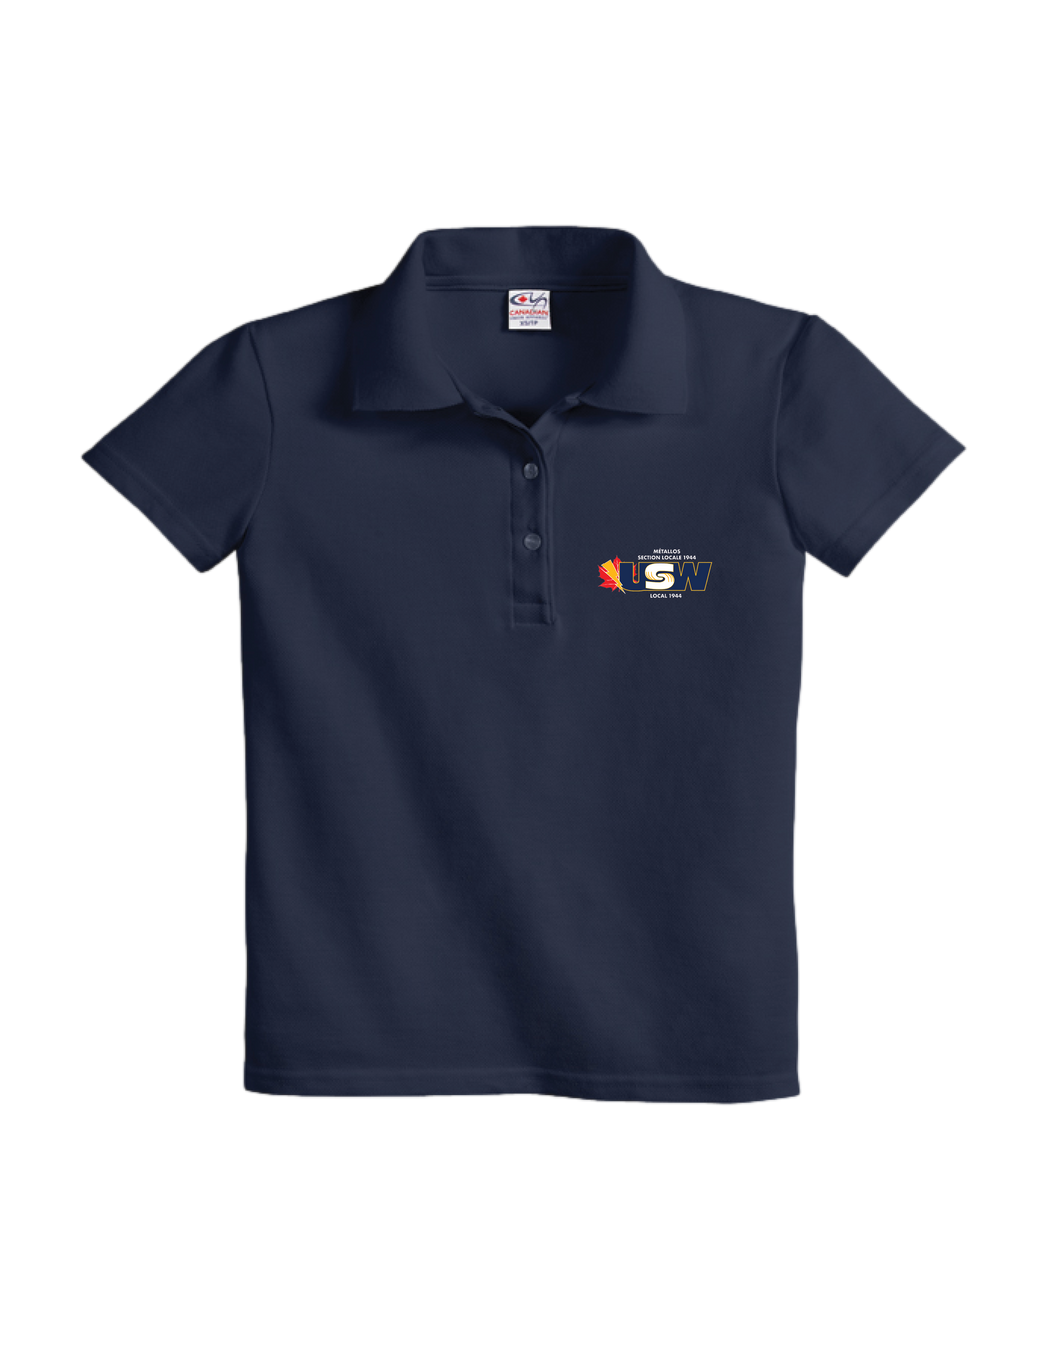 Women's Navy Cotton Piqué Polo Shirt with USW 1944 colour logo